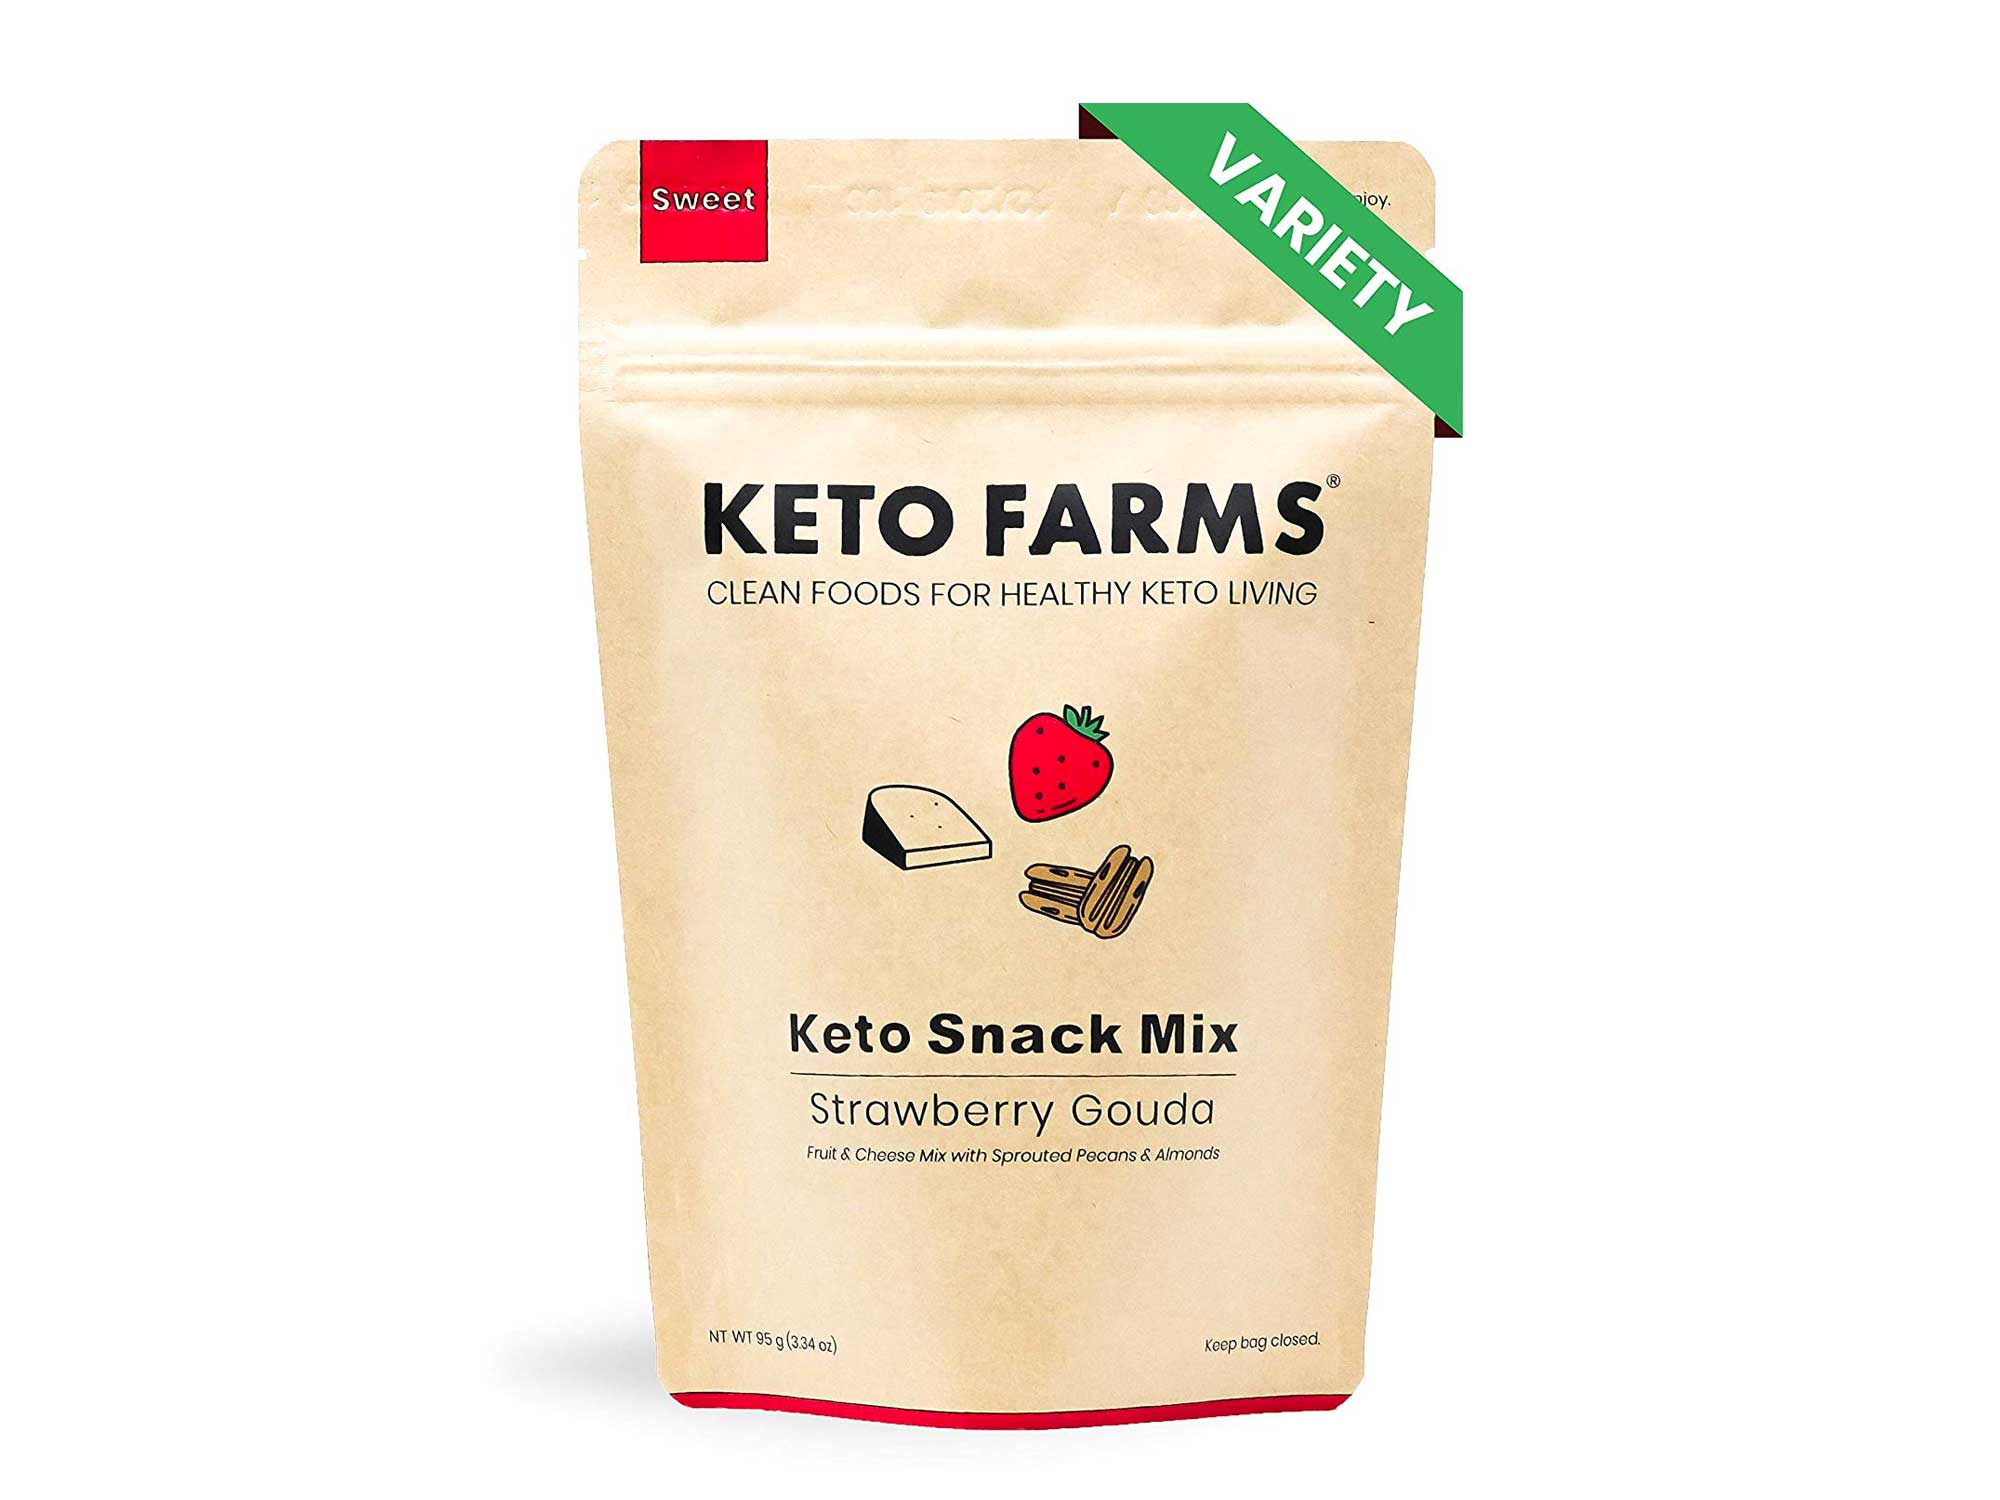 Keto farms dried snacks